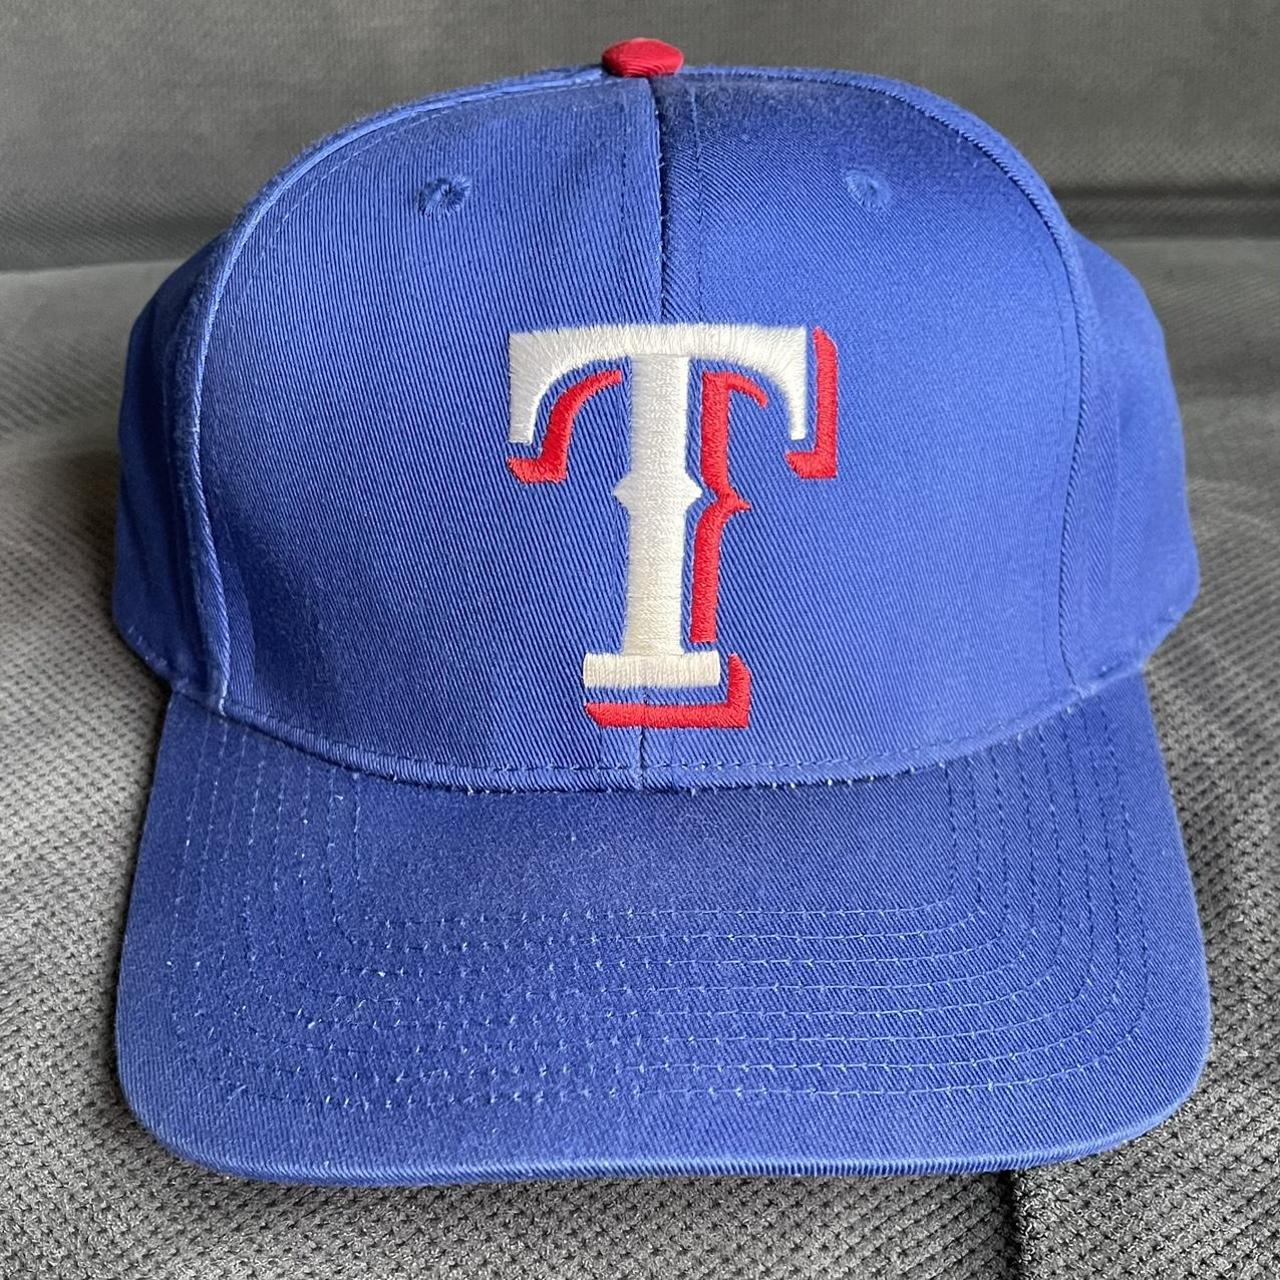 Vintage Texas Rangers Snapback